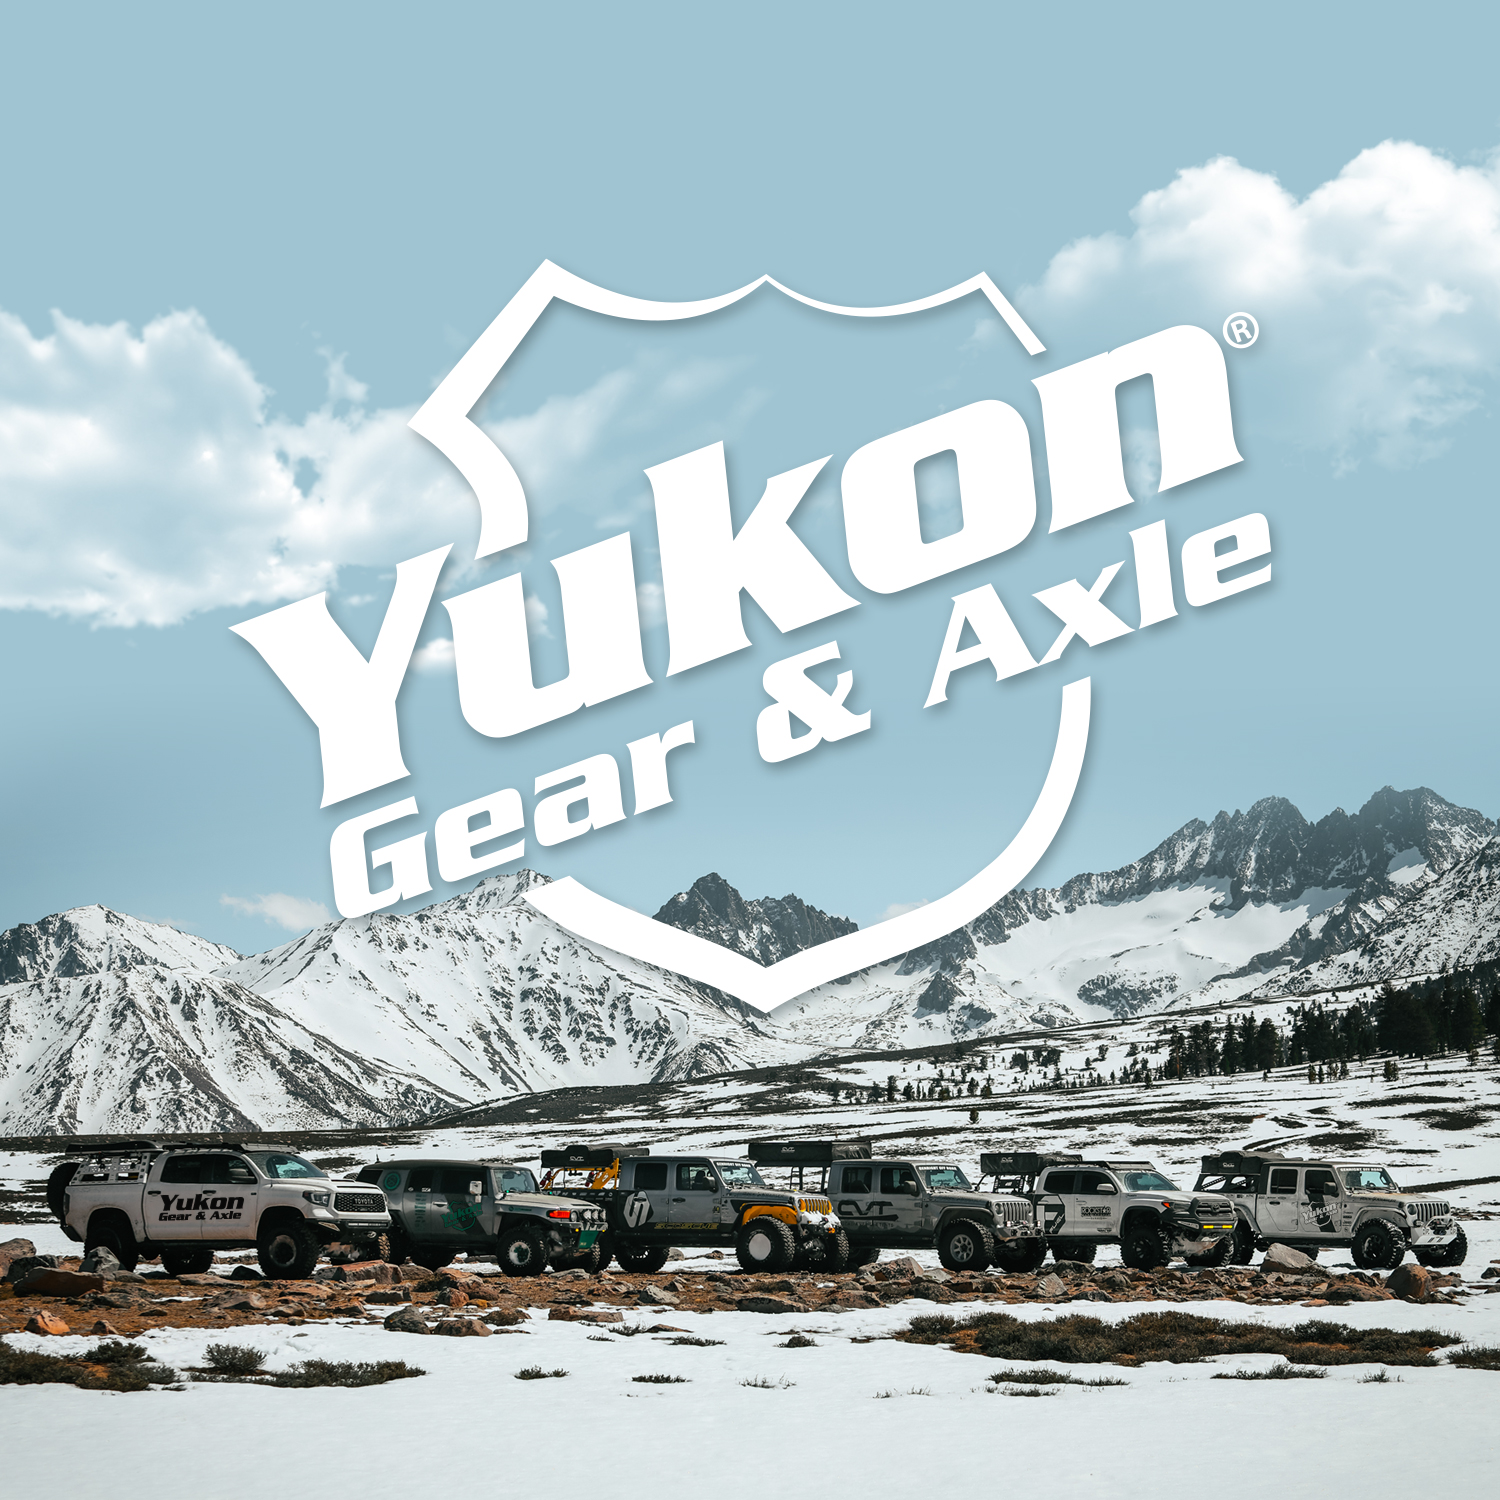 Yukon replacement standard open spider gear kit, Dana S110 w/34 spline axles 